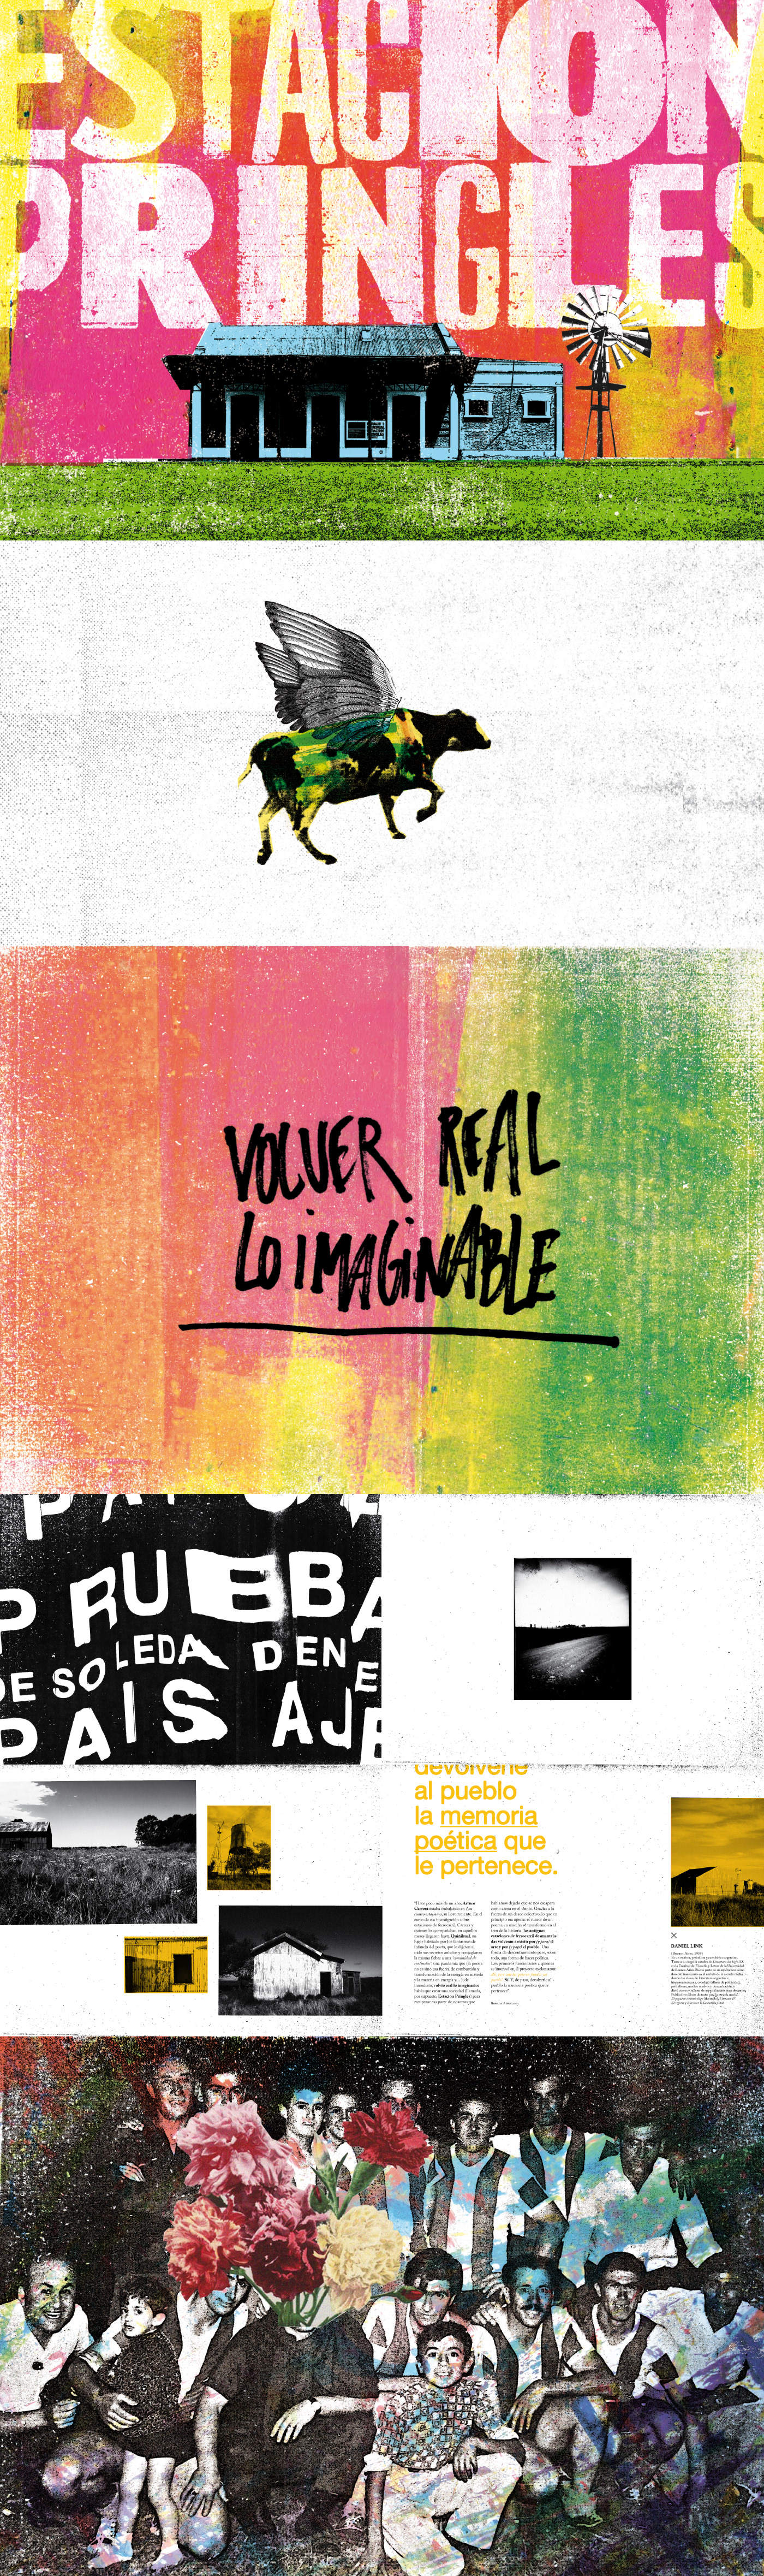 Quiñihual dg rico 3 uba fadu collage colorful ILLUSTRATION  book experimental Estación Pringles